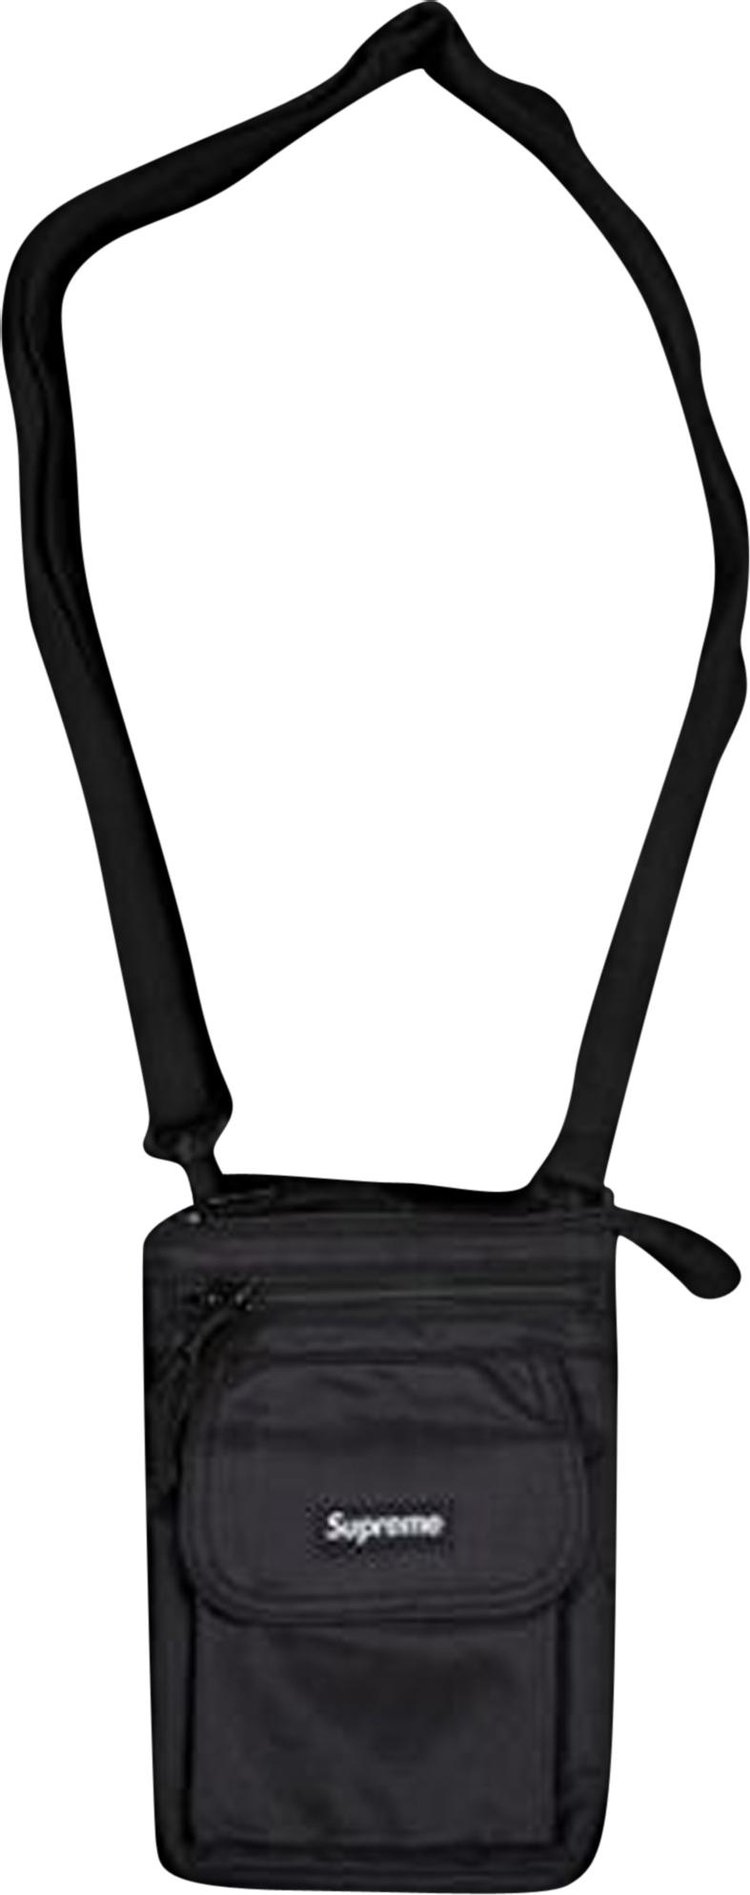 Supreme Shoulder Bag Black  Bags, Shoulder bag, Leather